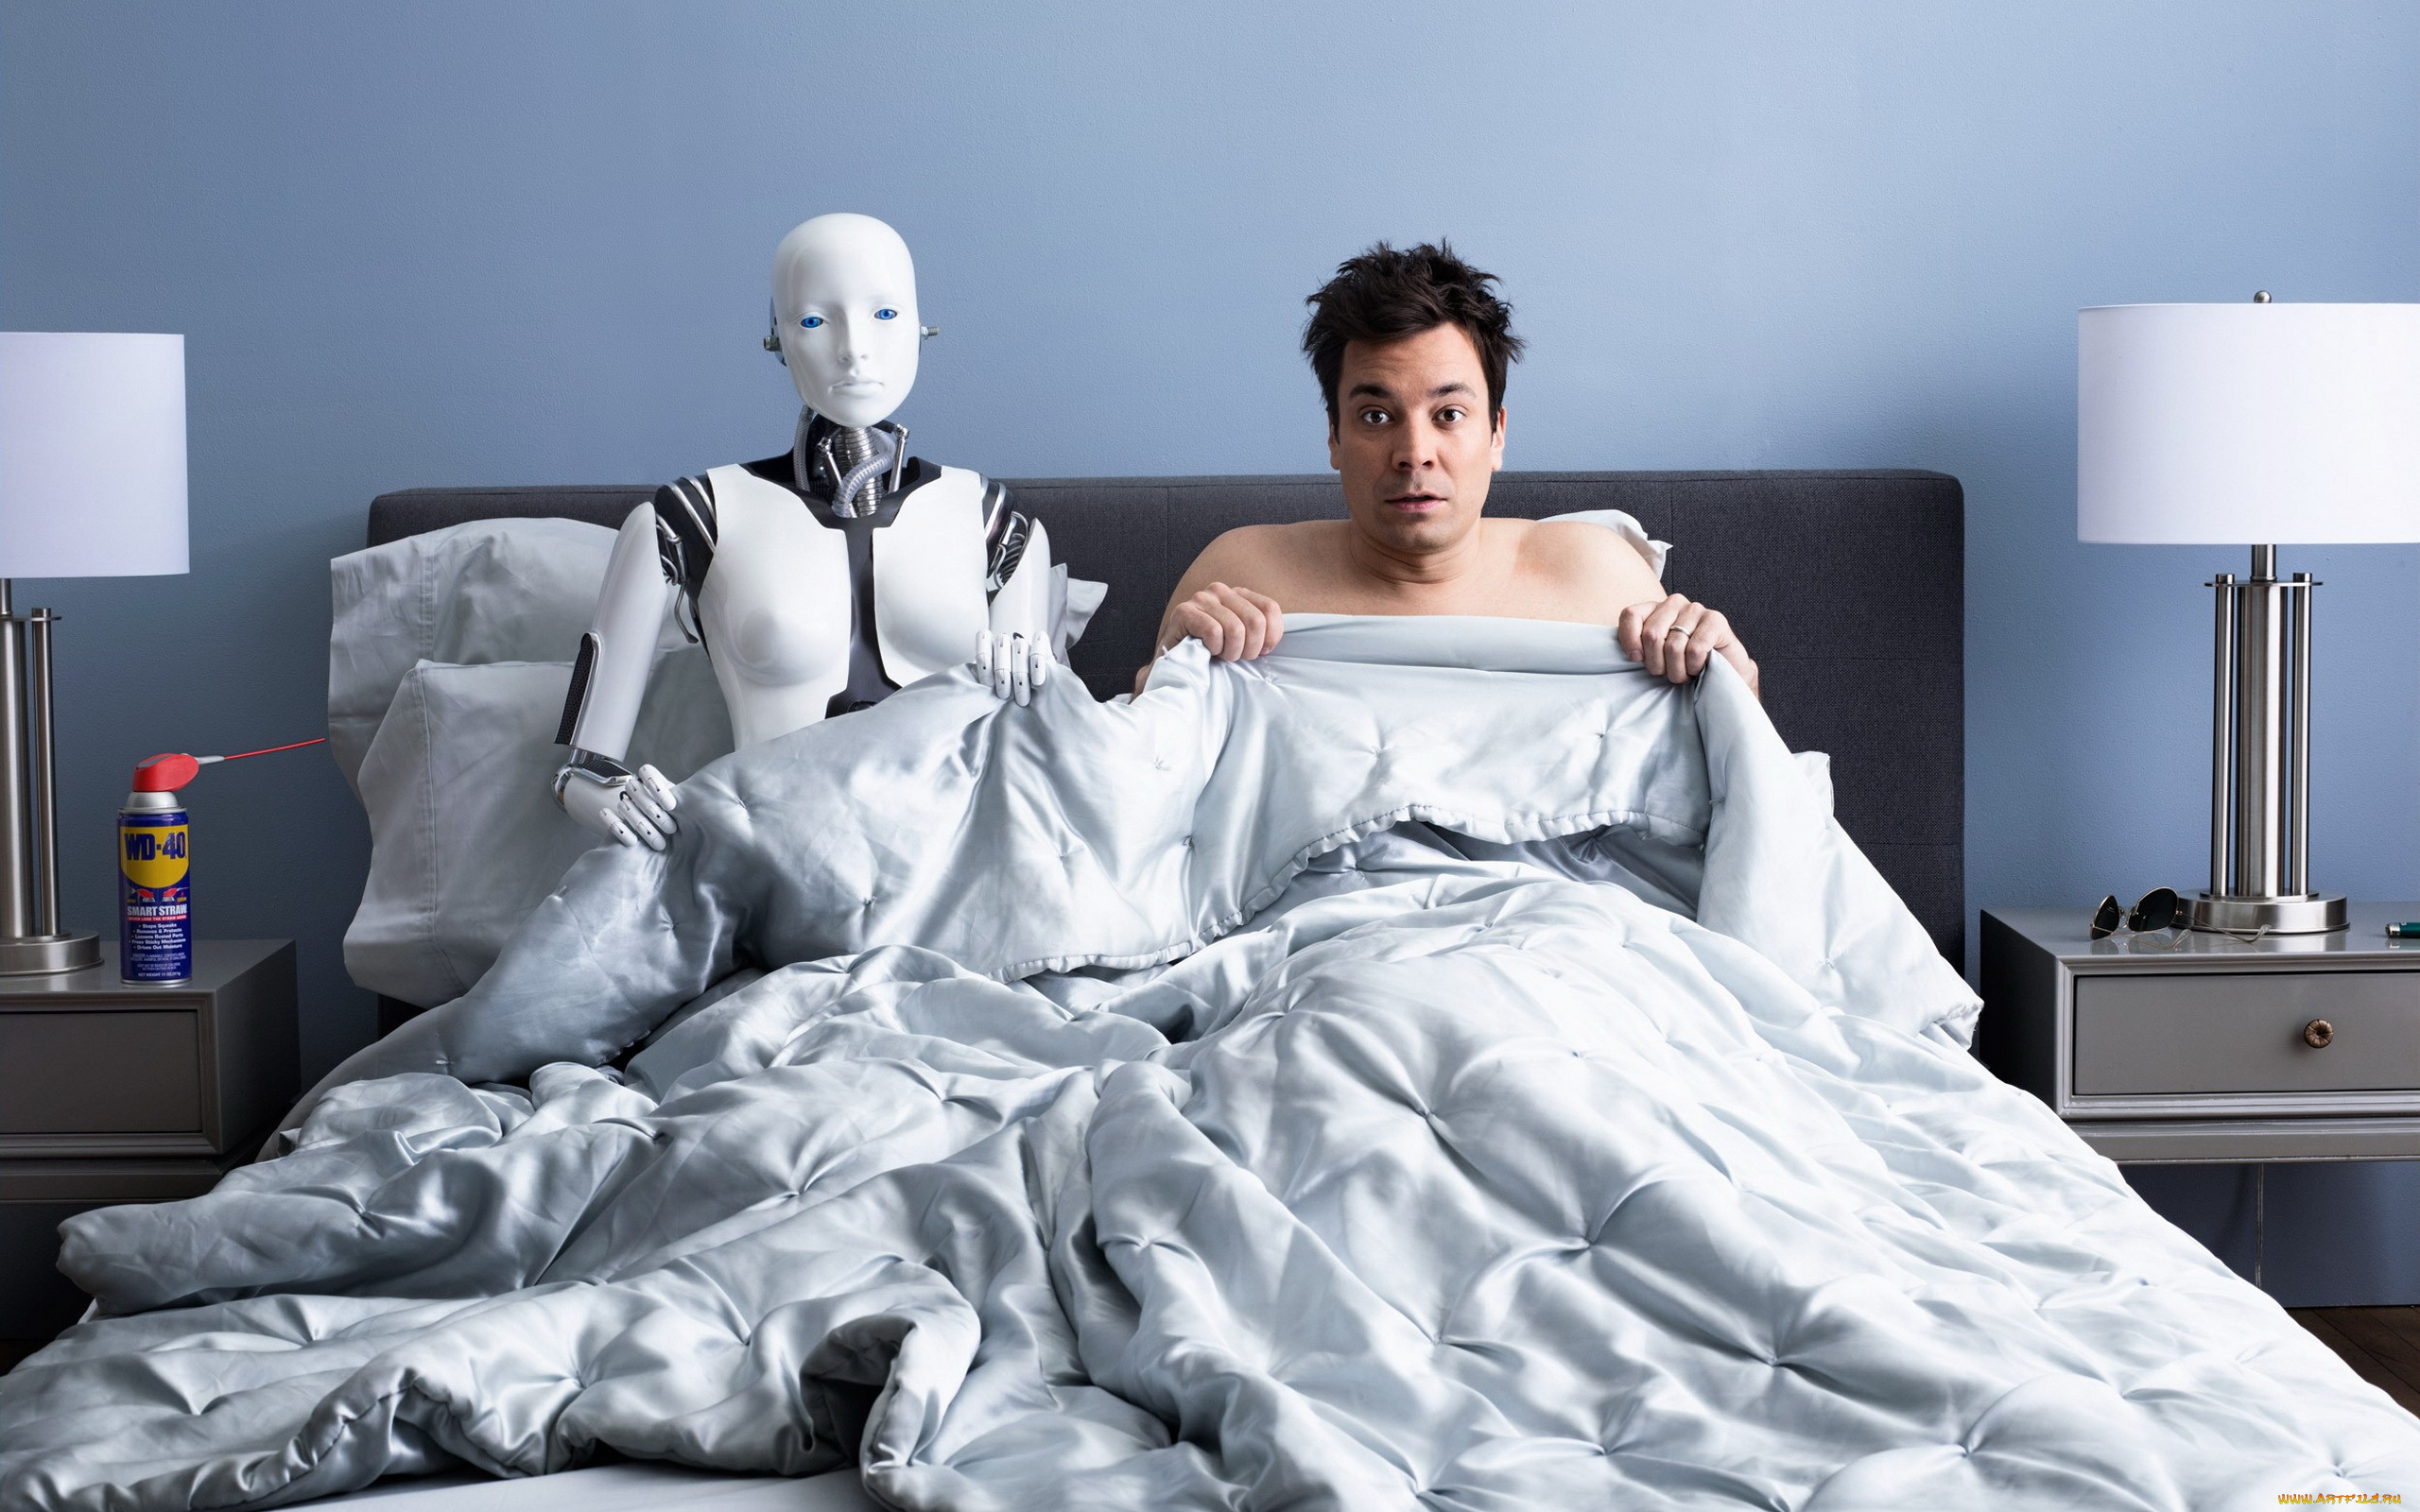 юмор, и, приколы, кровать, андроид, робот, мужчина